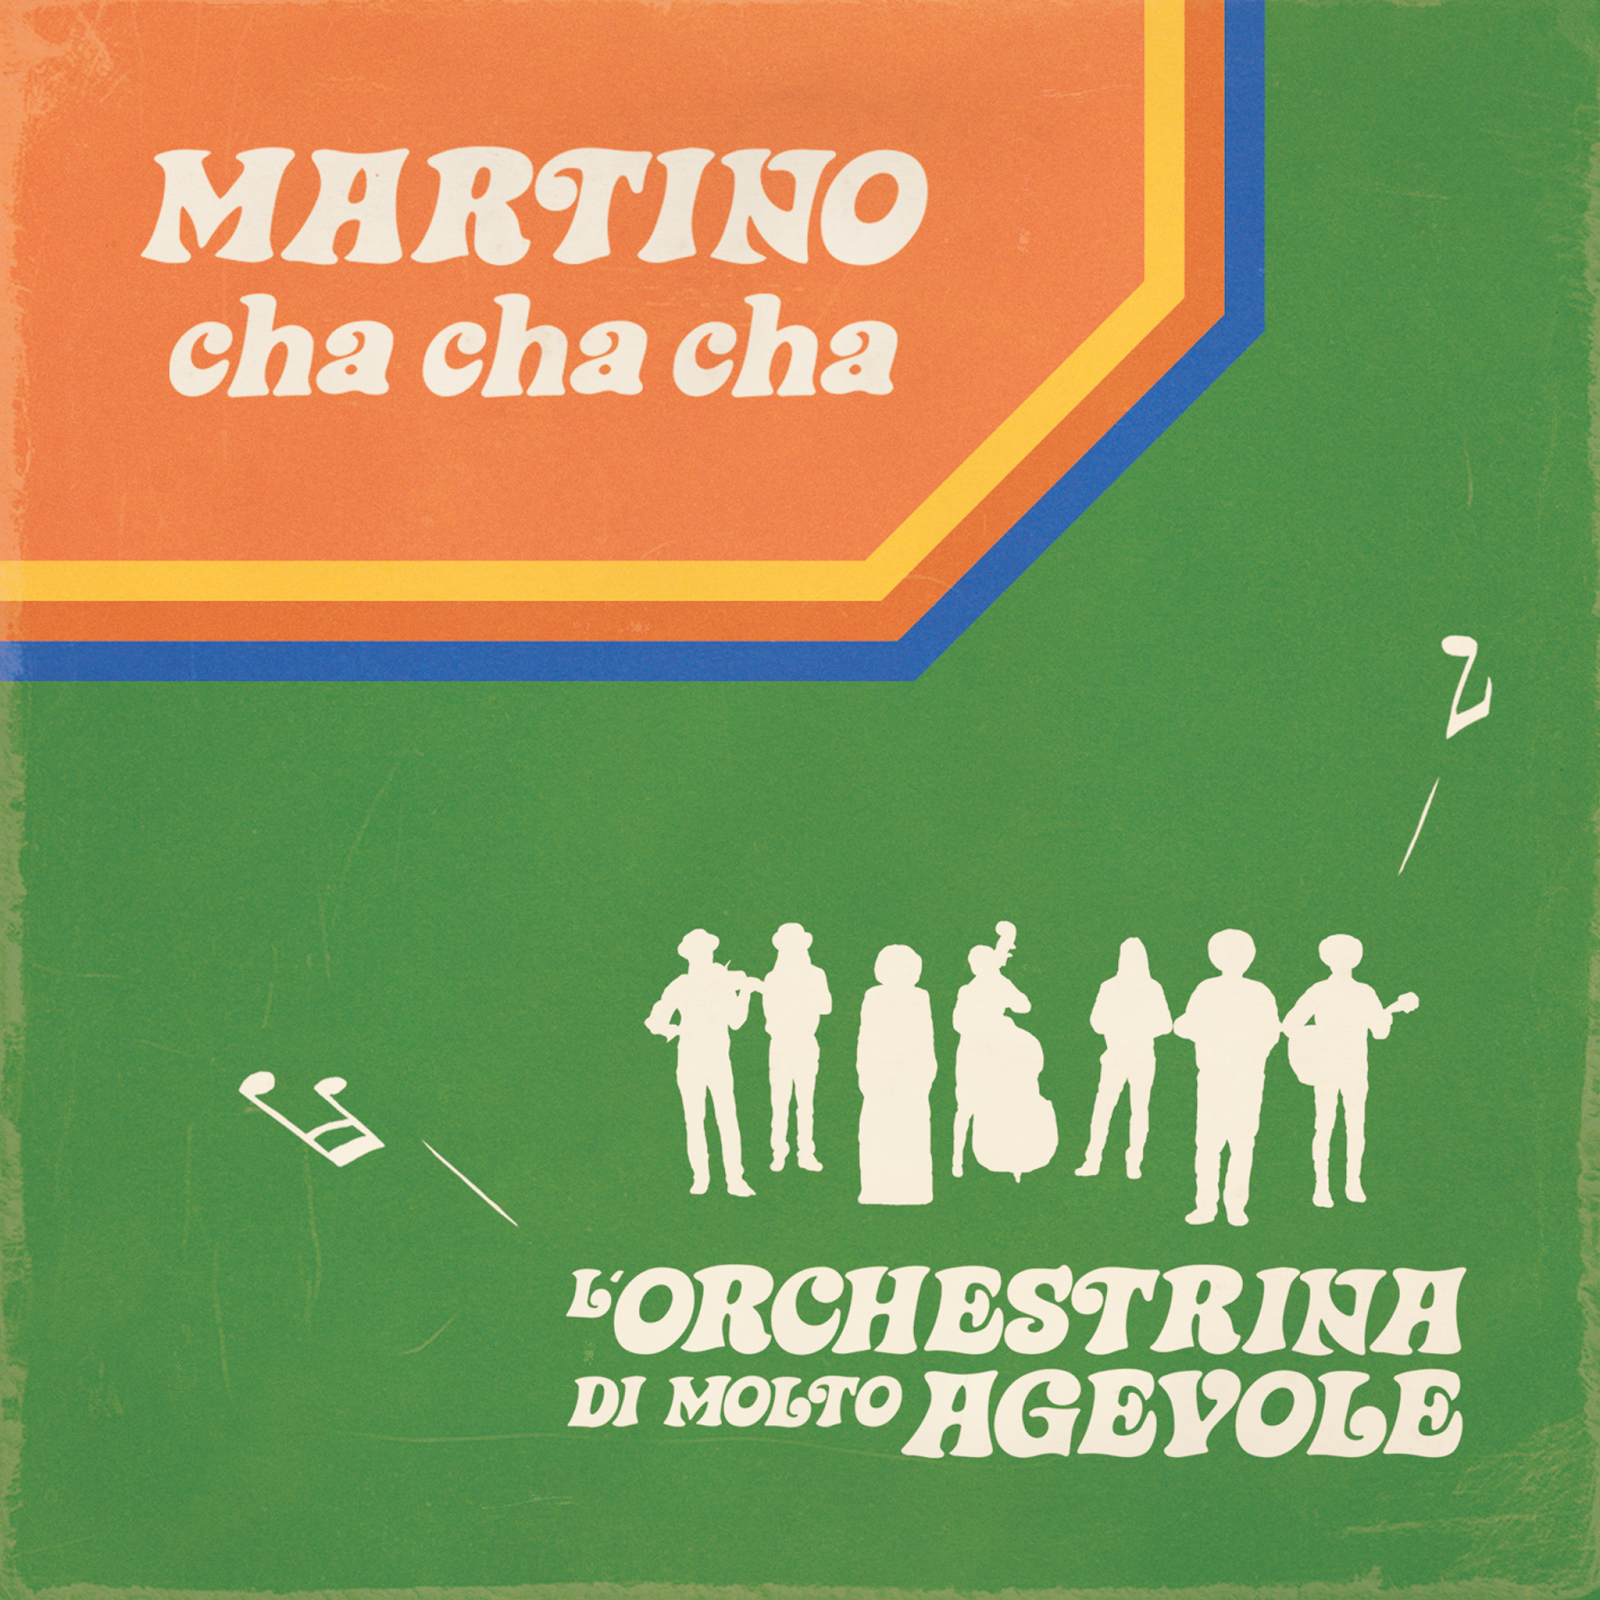 Copertina del singolo "Martino cha cha cha"